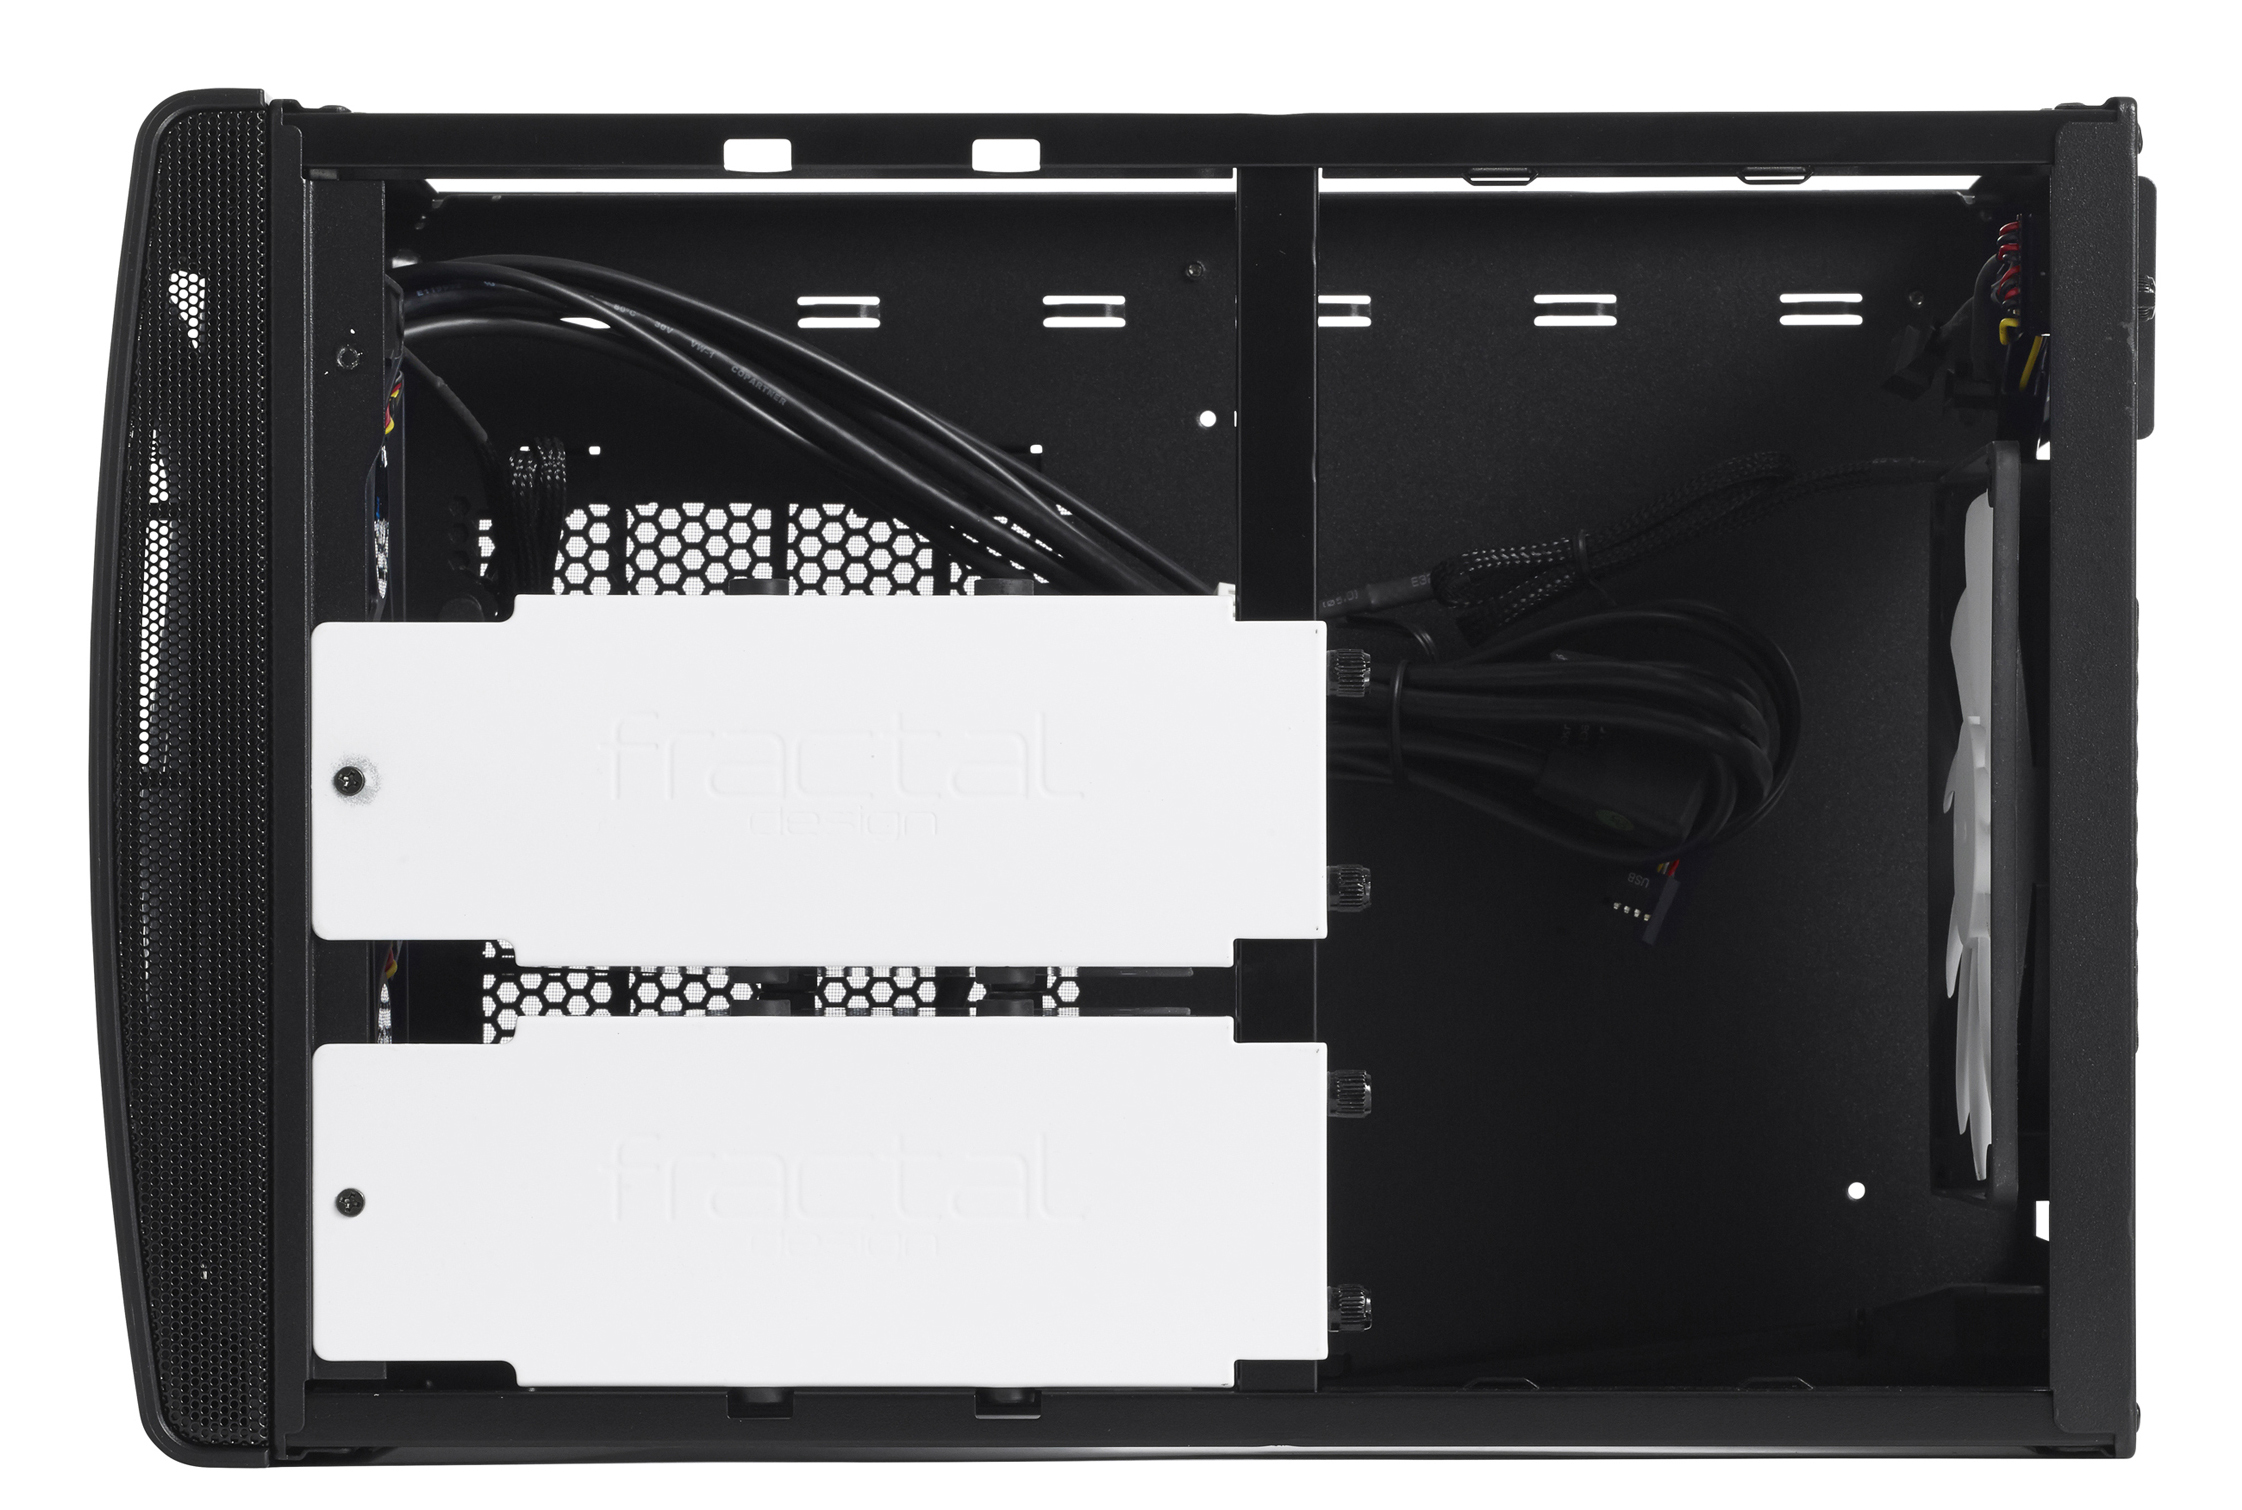 Fractal Design - Caixa Mini-ITX Fractal Design Node 304 black